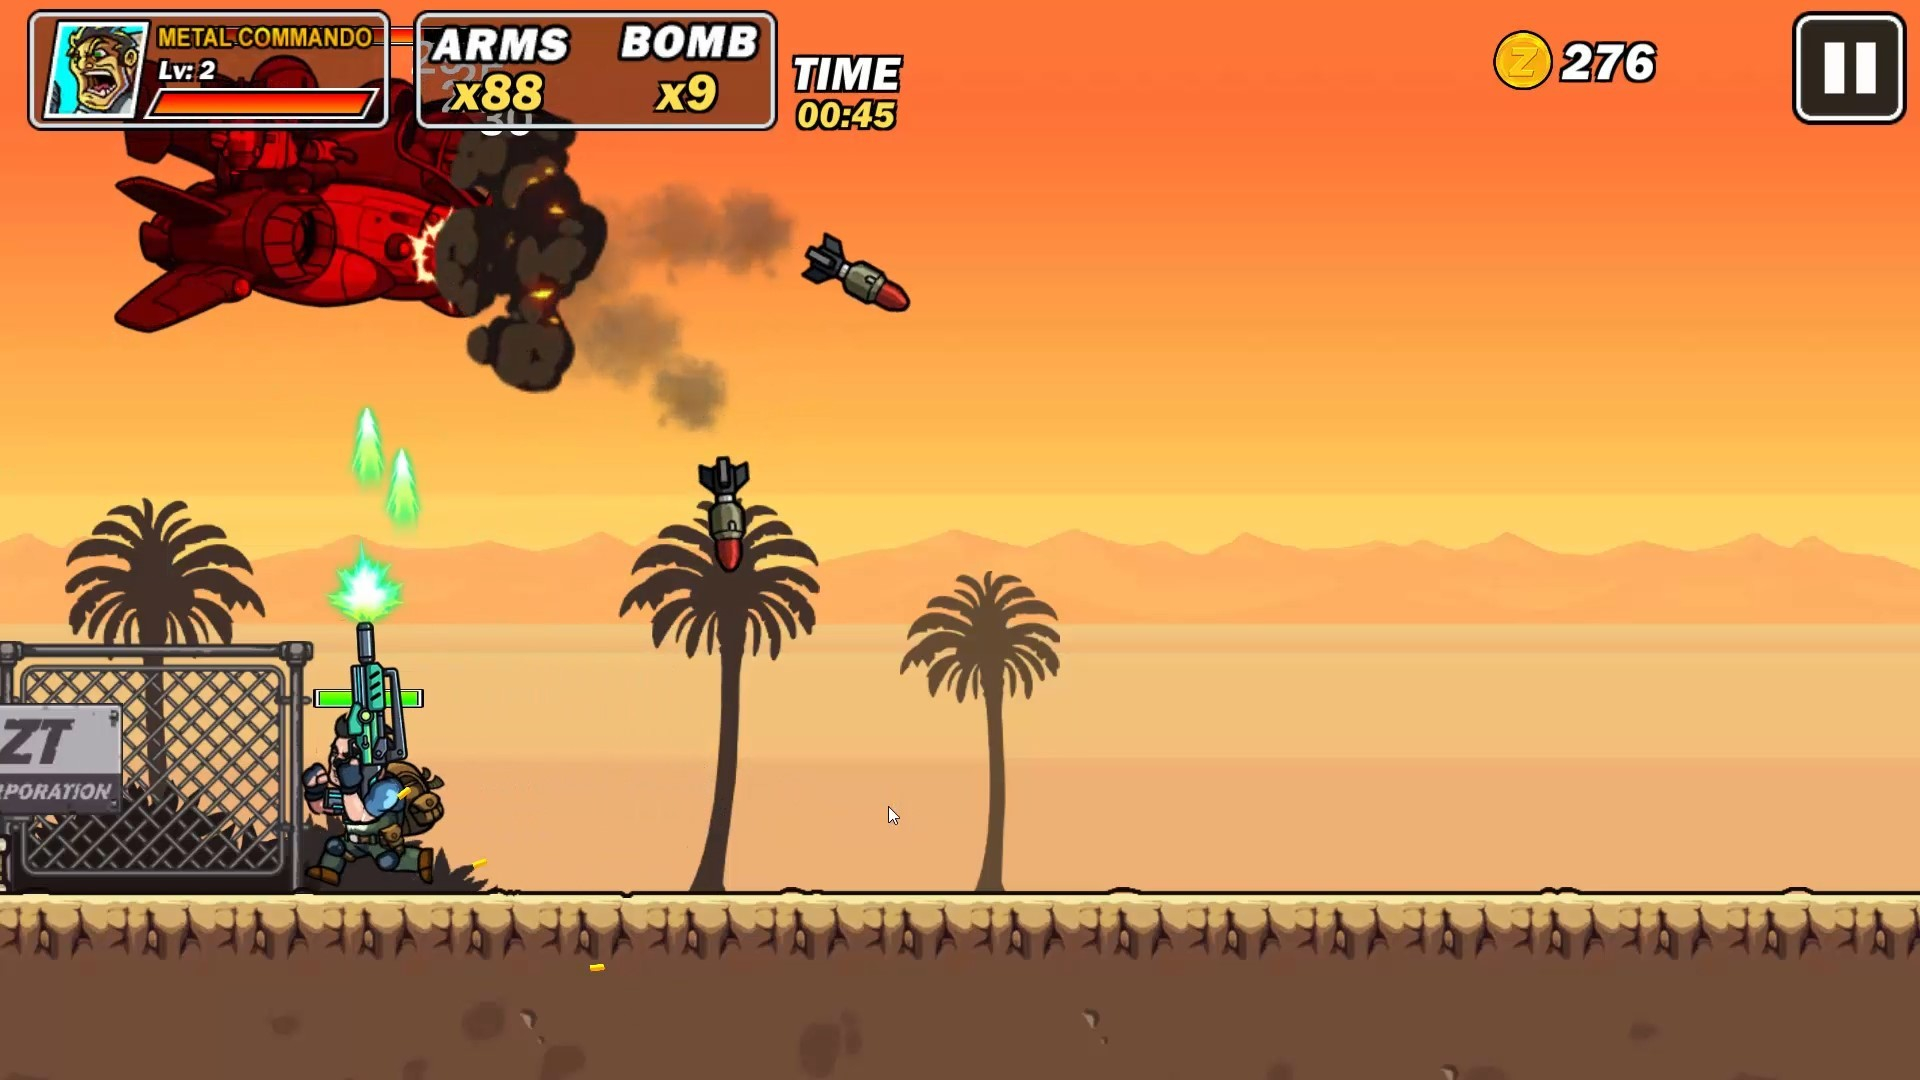 Скриншот из игры Metal Commando под номером 1